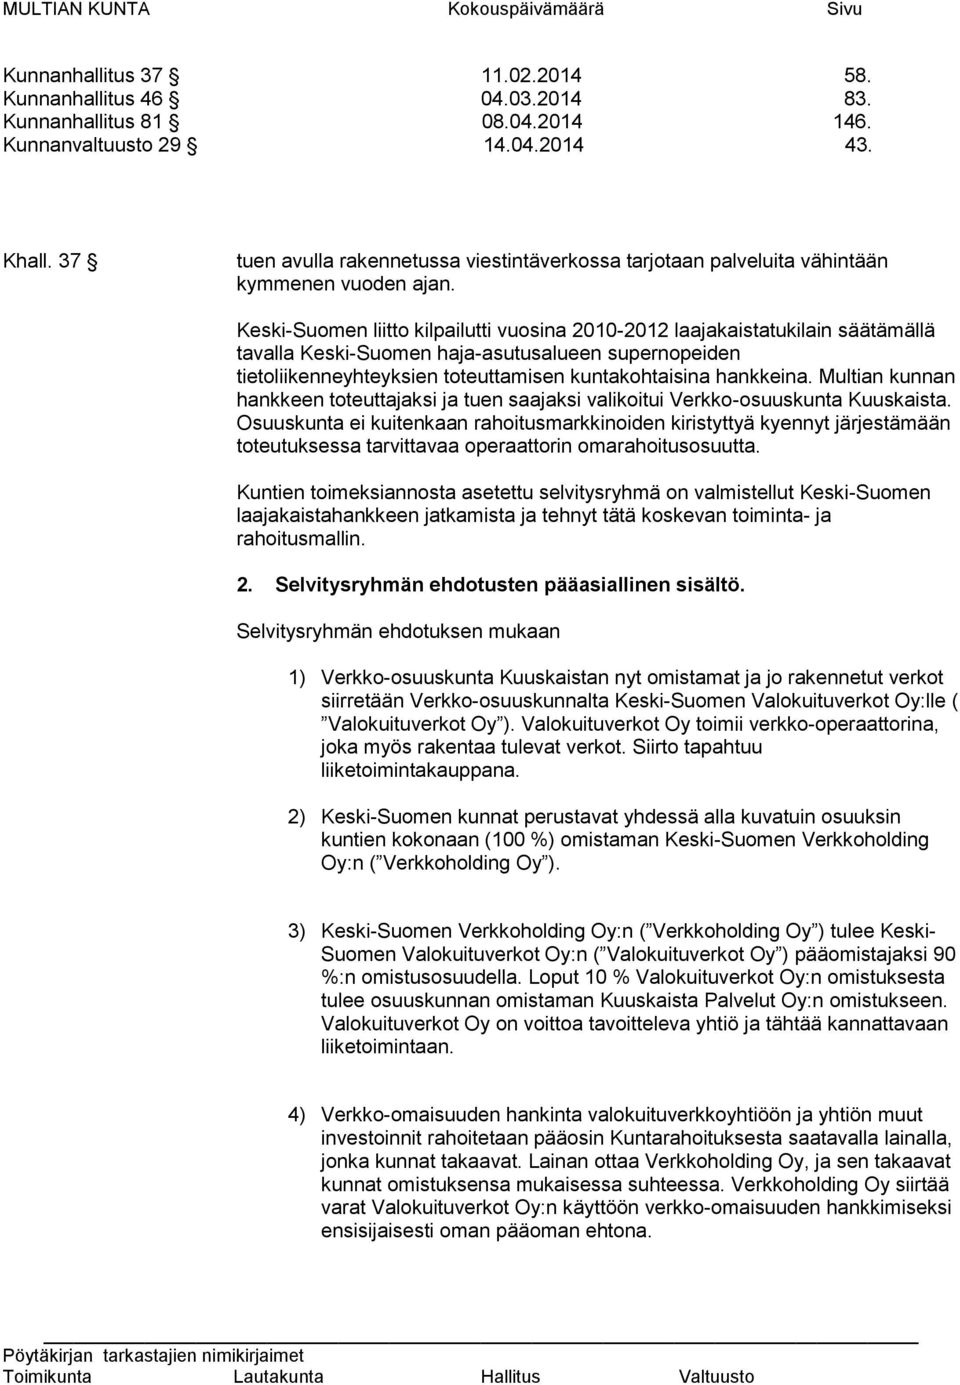 Keski-Suomen liitto kilpailutti vuosina 2010-2012 laajakaistatukilain säätämällä tavalla Keski-Suomen haja-asutusalueen supernopeiden tietoliikenneyhteyksien toteuttamisen kuntakohtaisina hankkeina.